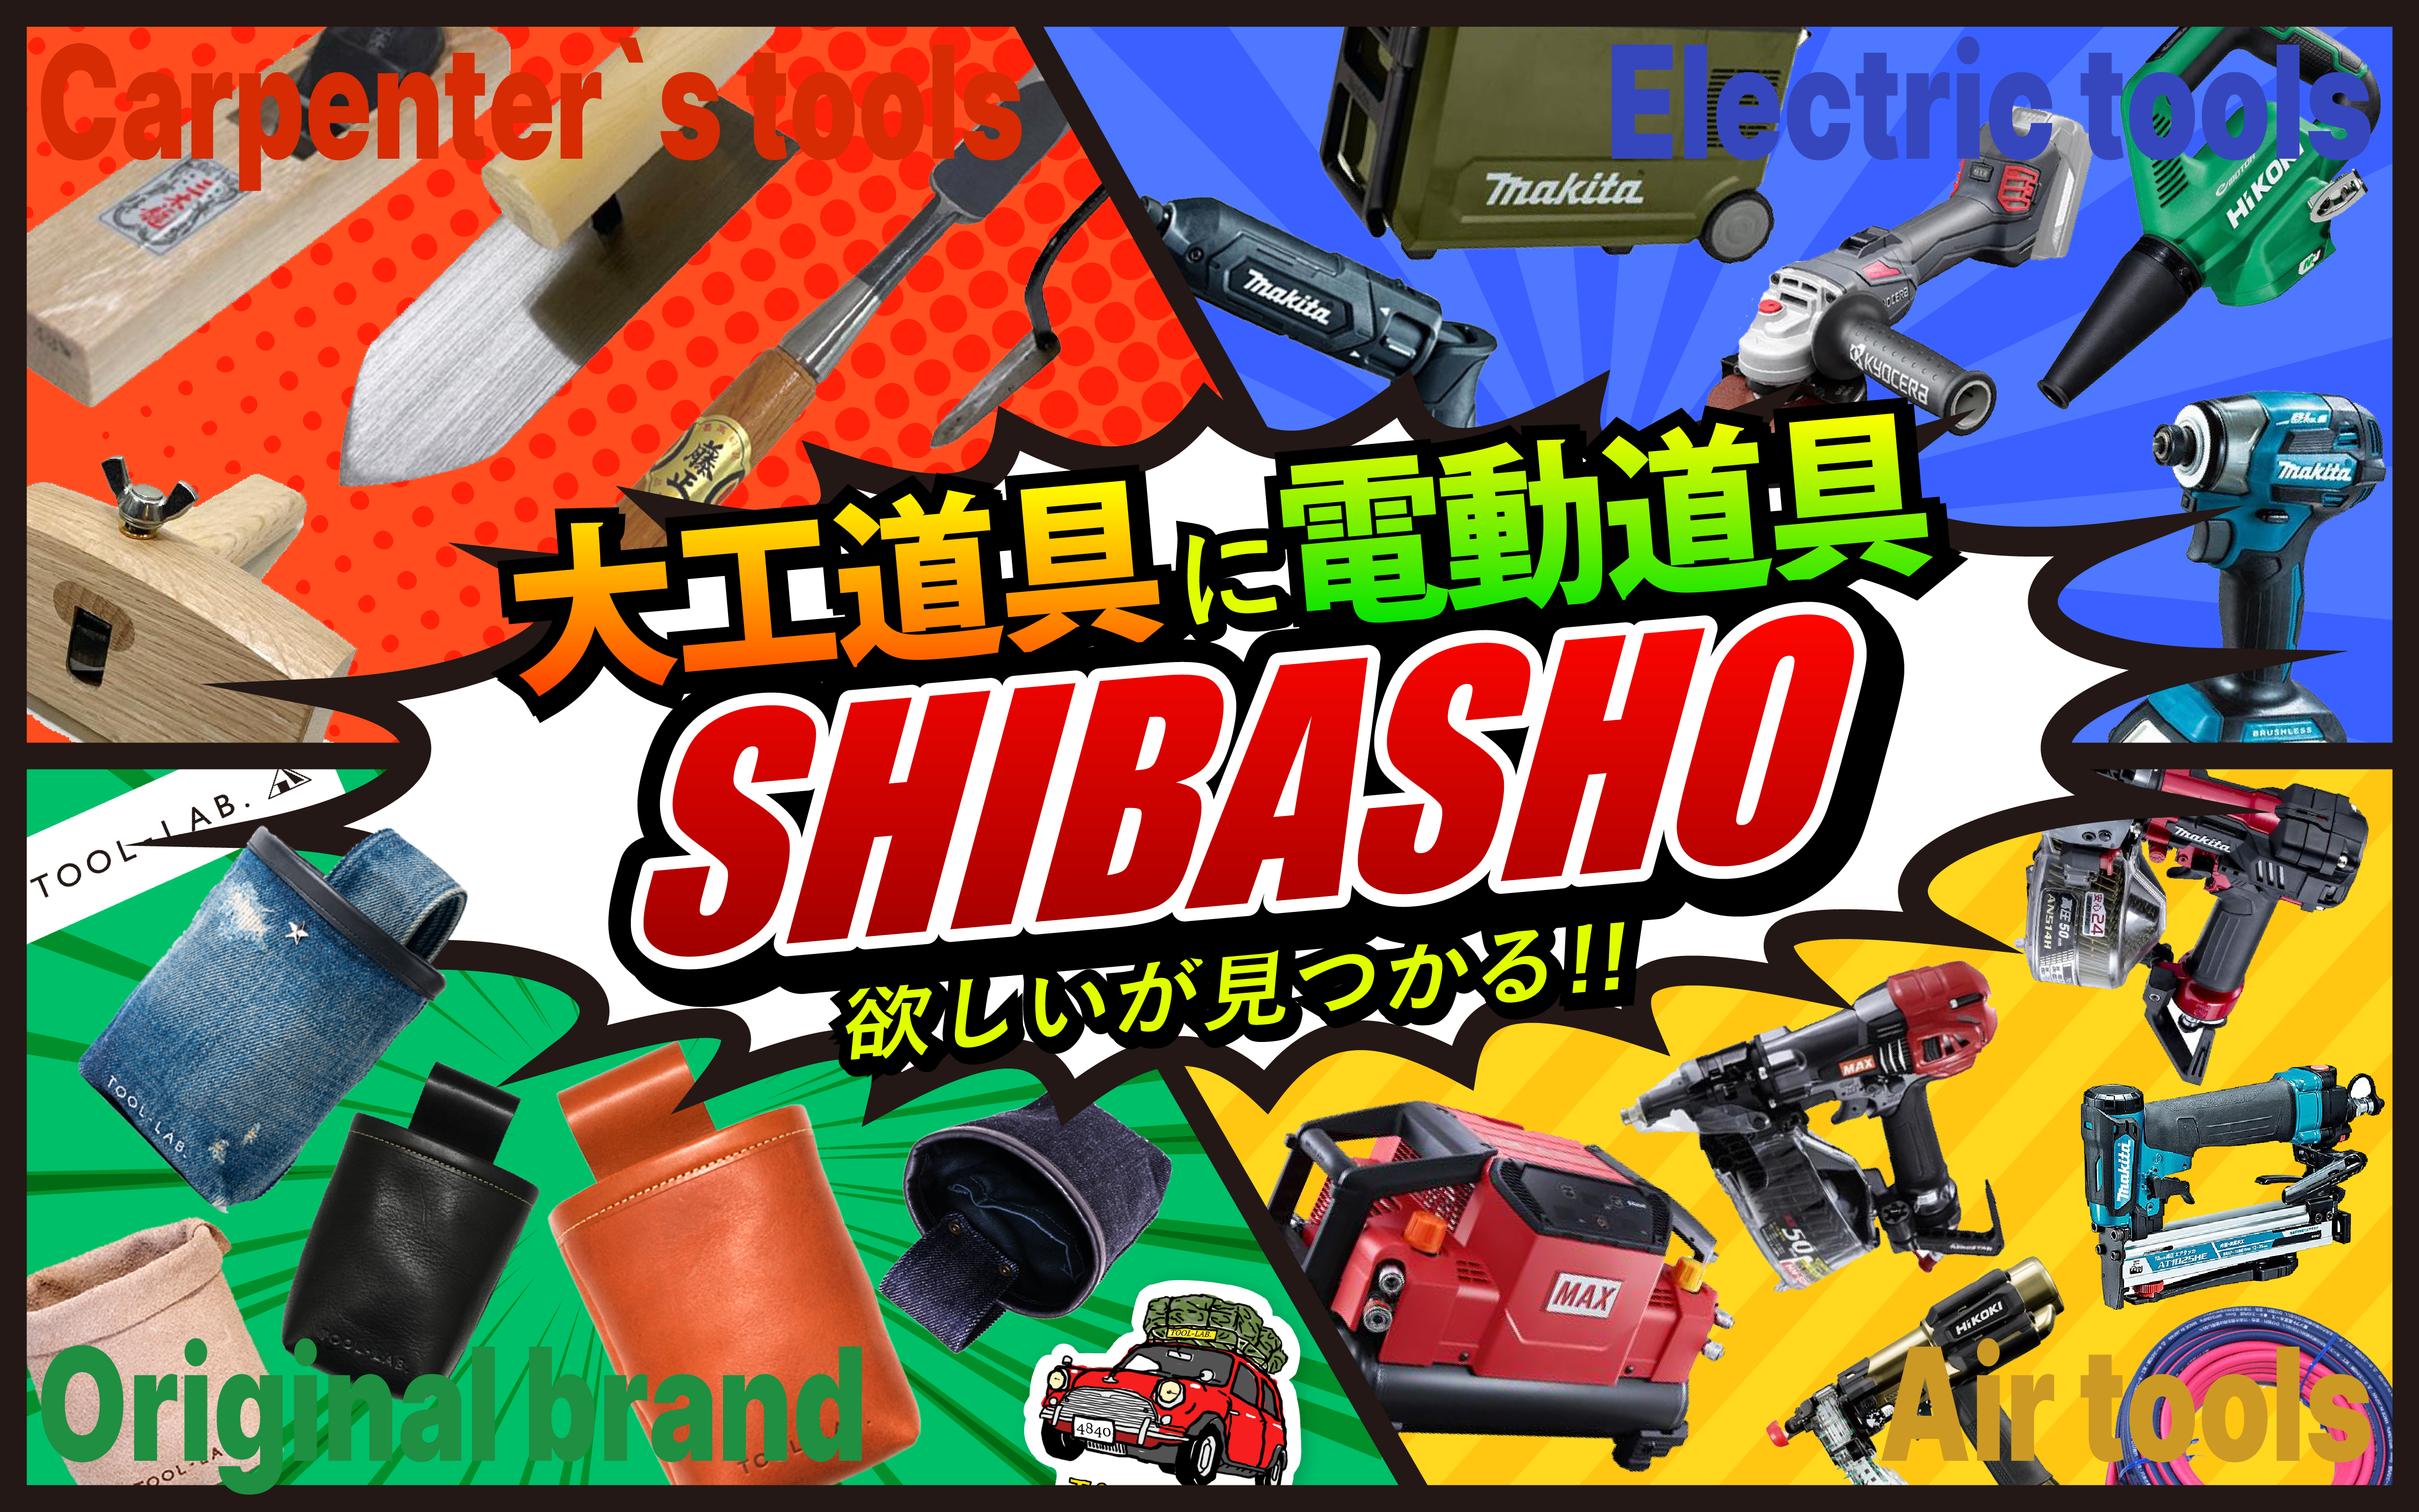 大工道具に電動工具のSHIBASHO